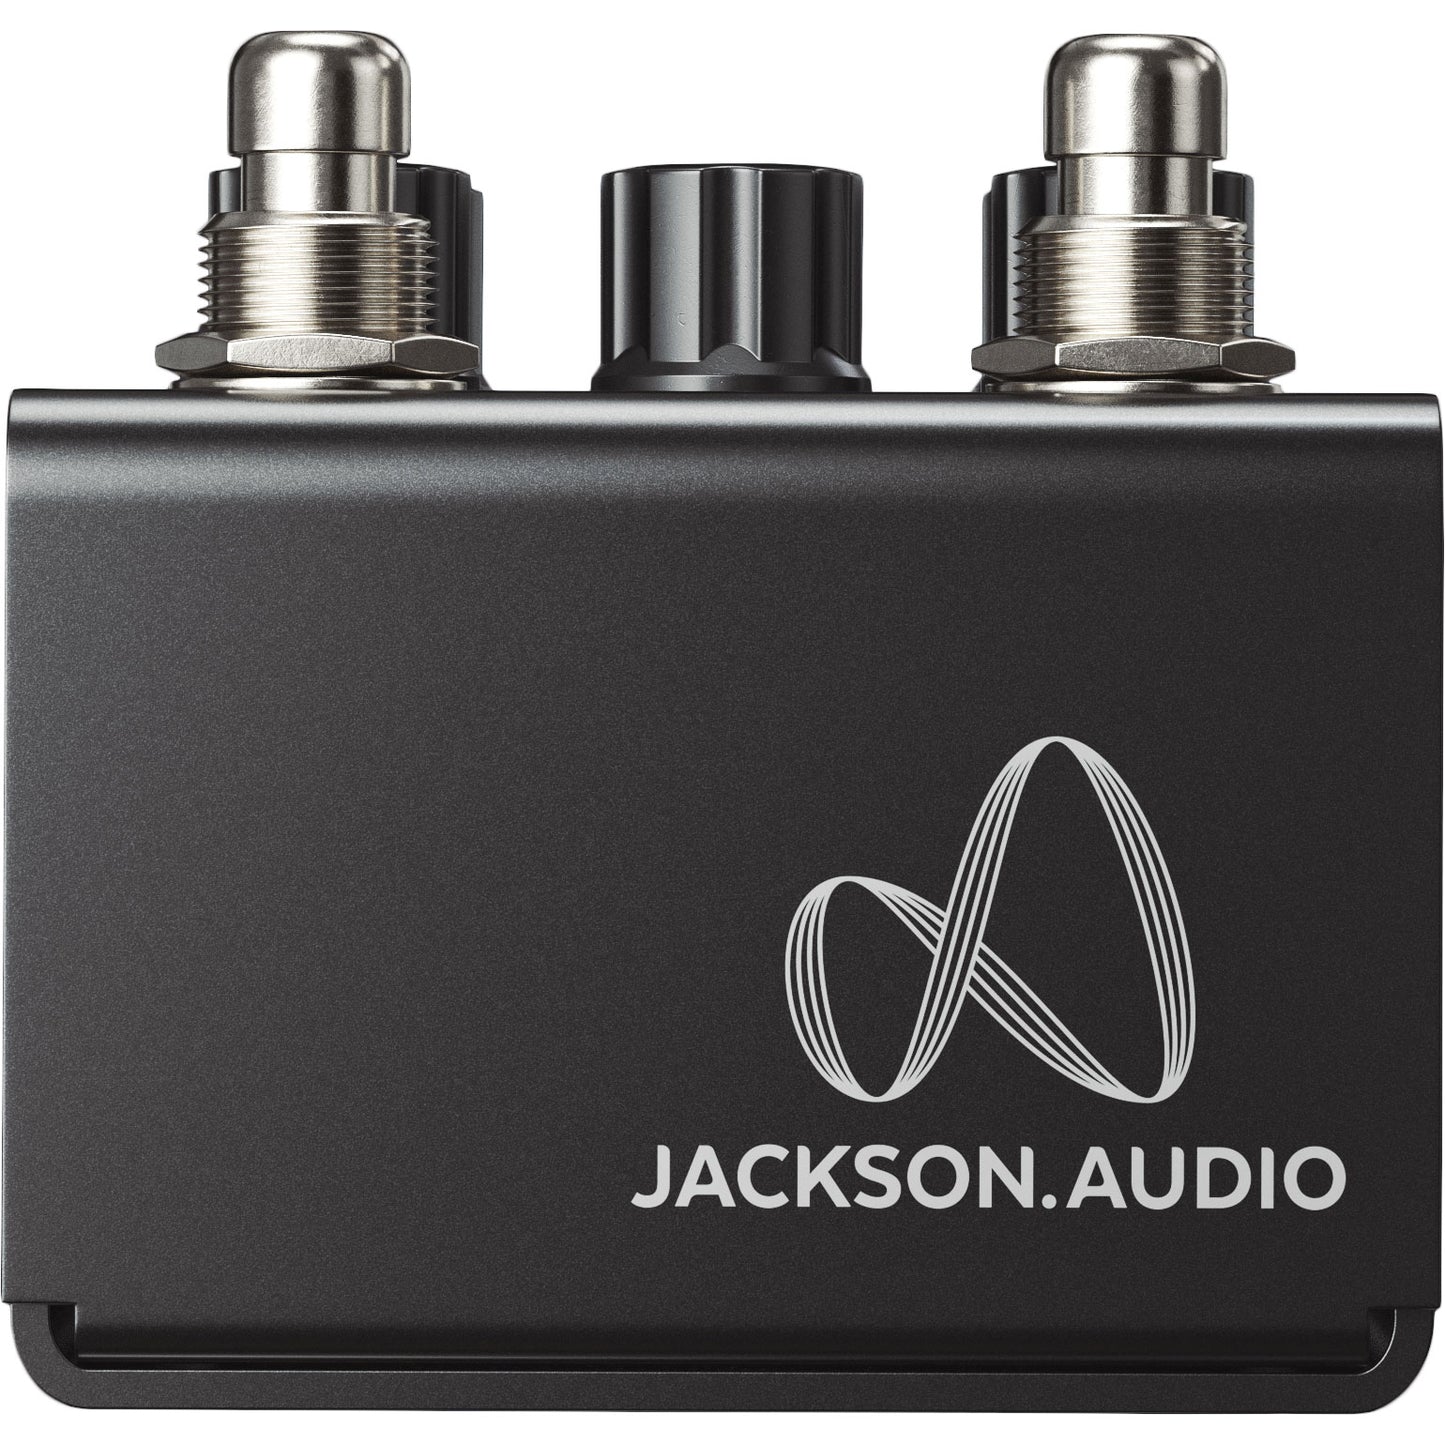 Jackson Audio Bloom V2 MIDI Compressor Pedal in Black